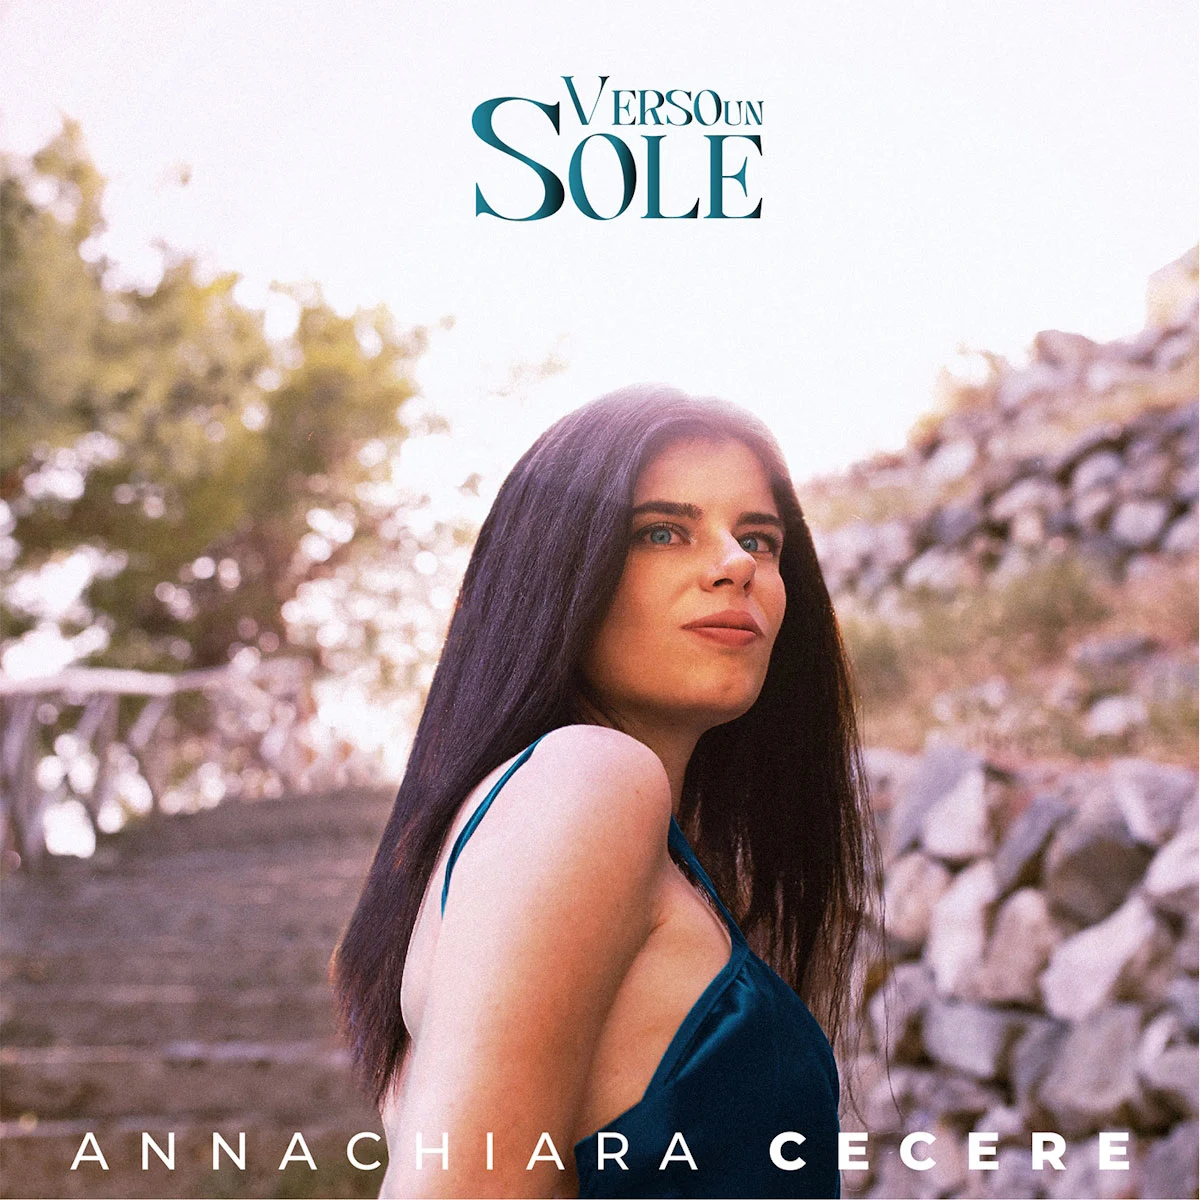 “VERSO UN SOLE” è il nuovo singolo di Annachiara Cecere